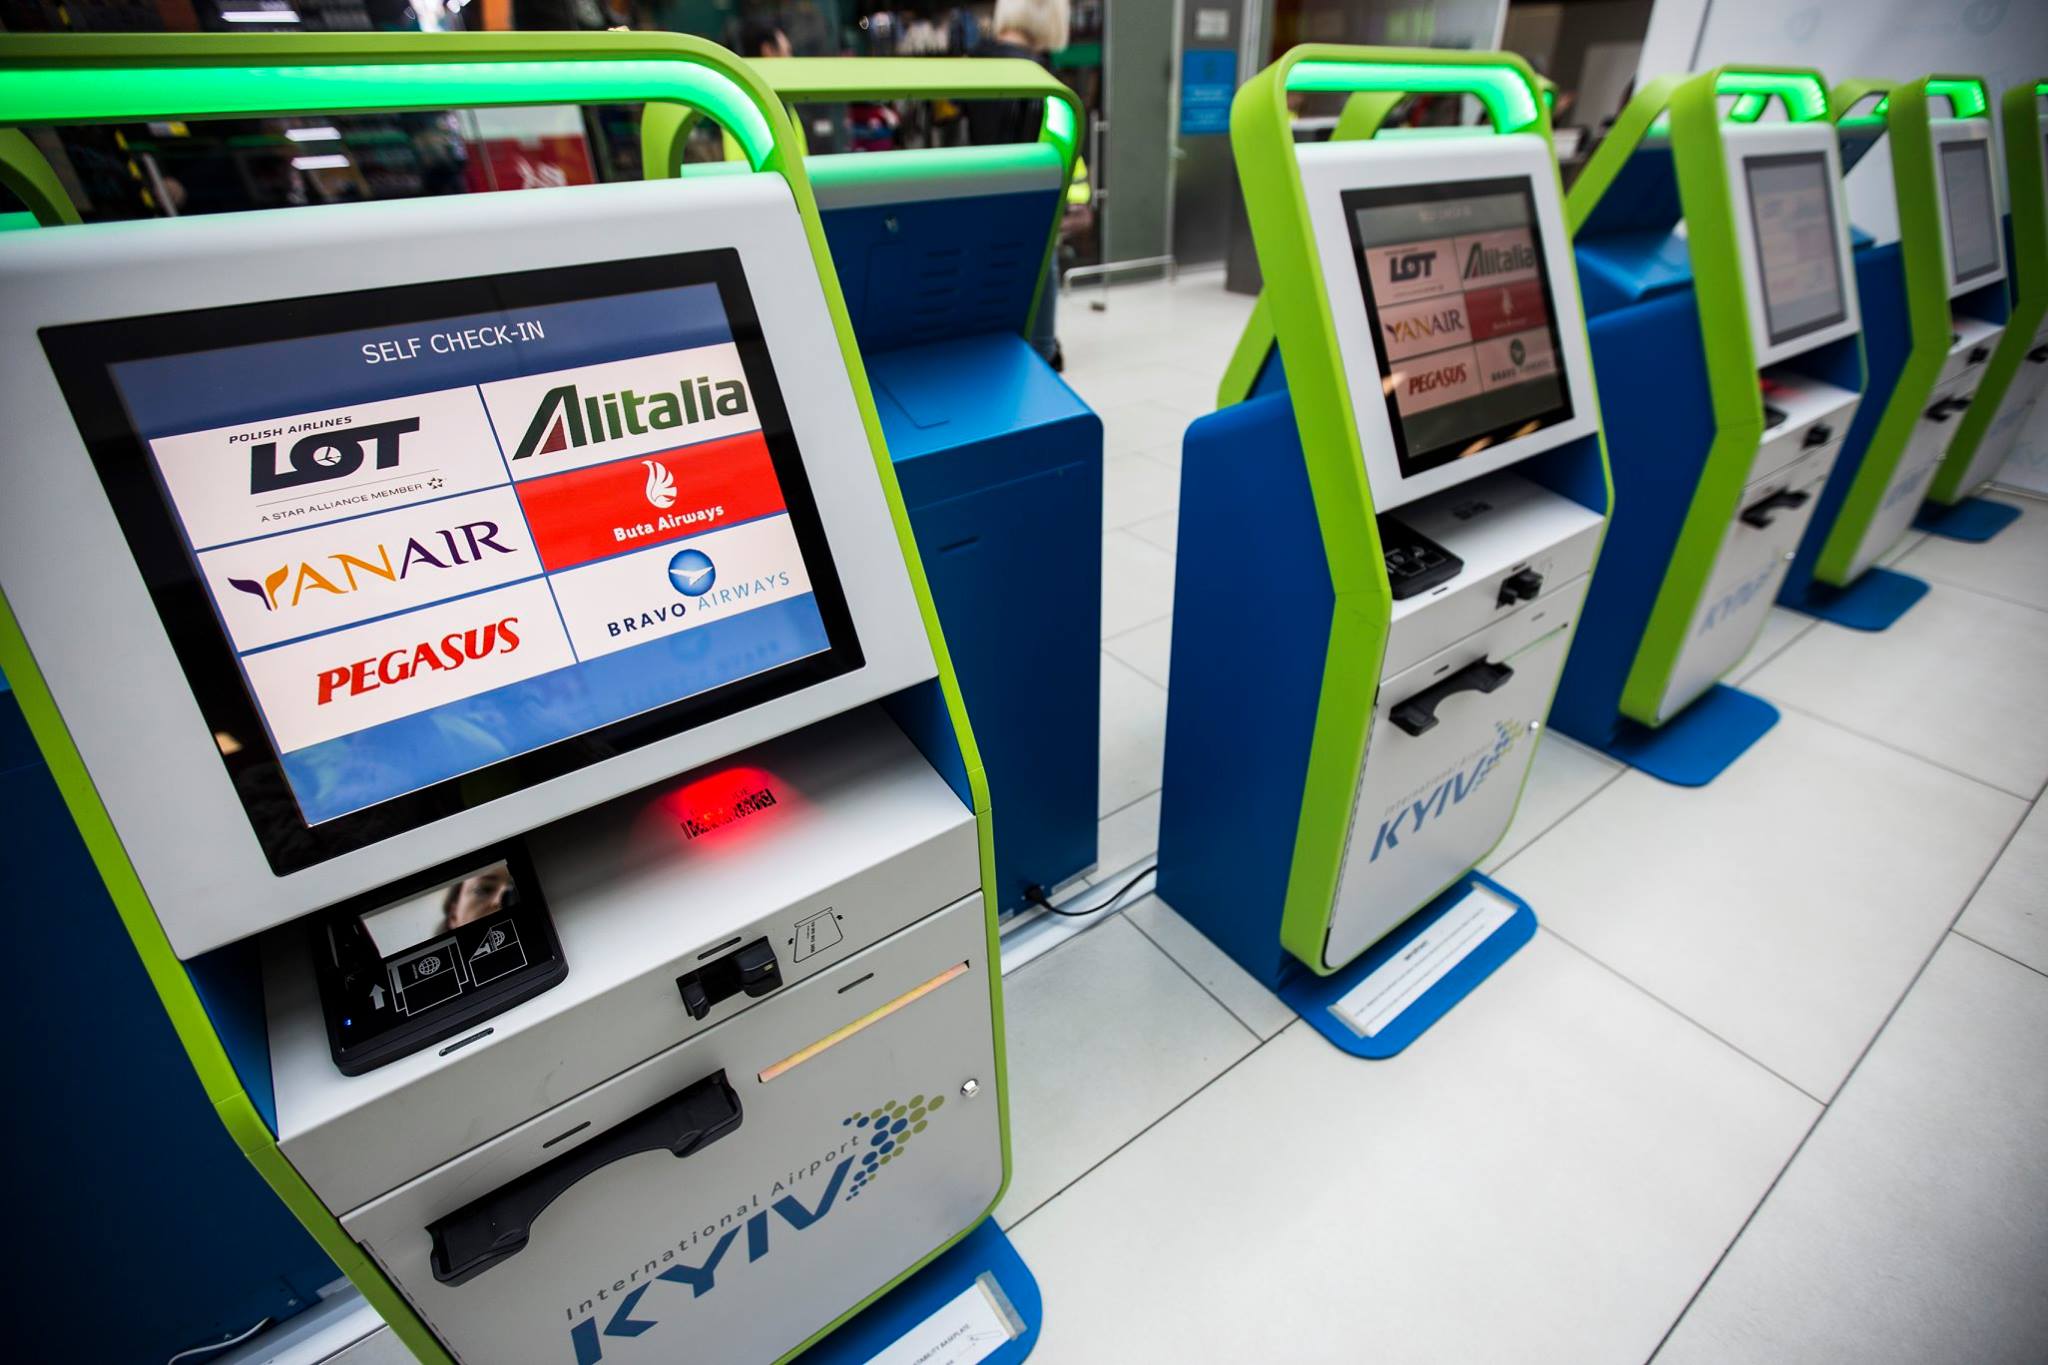 Будущее "Жулян": зачем аэропорт "Киев" расширяет терминал